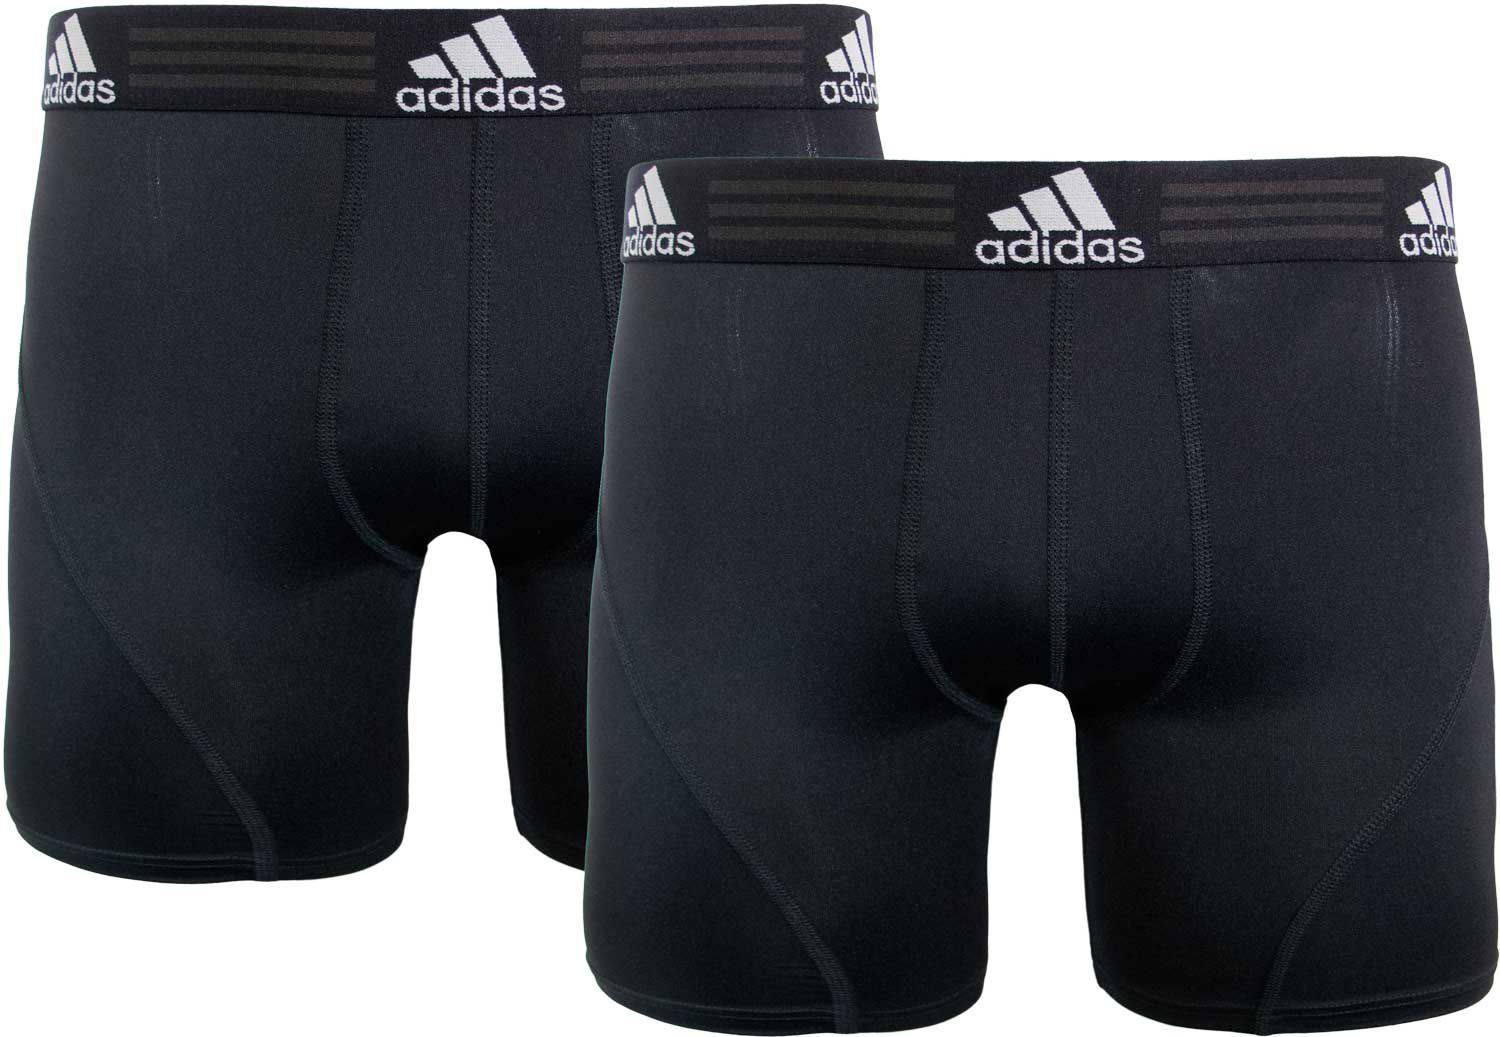 adidas men's sport performance climalite boxer brief underwear